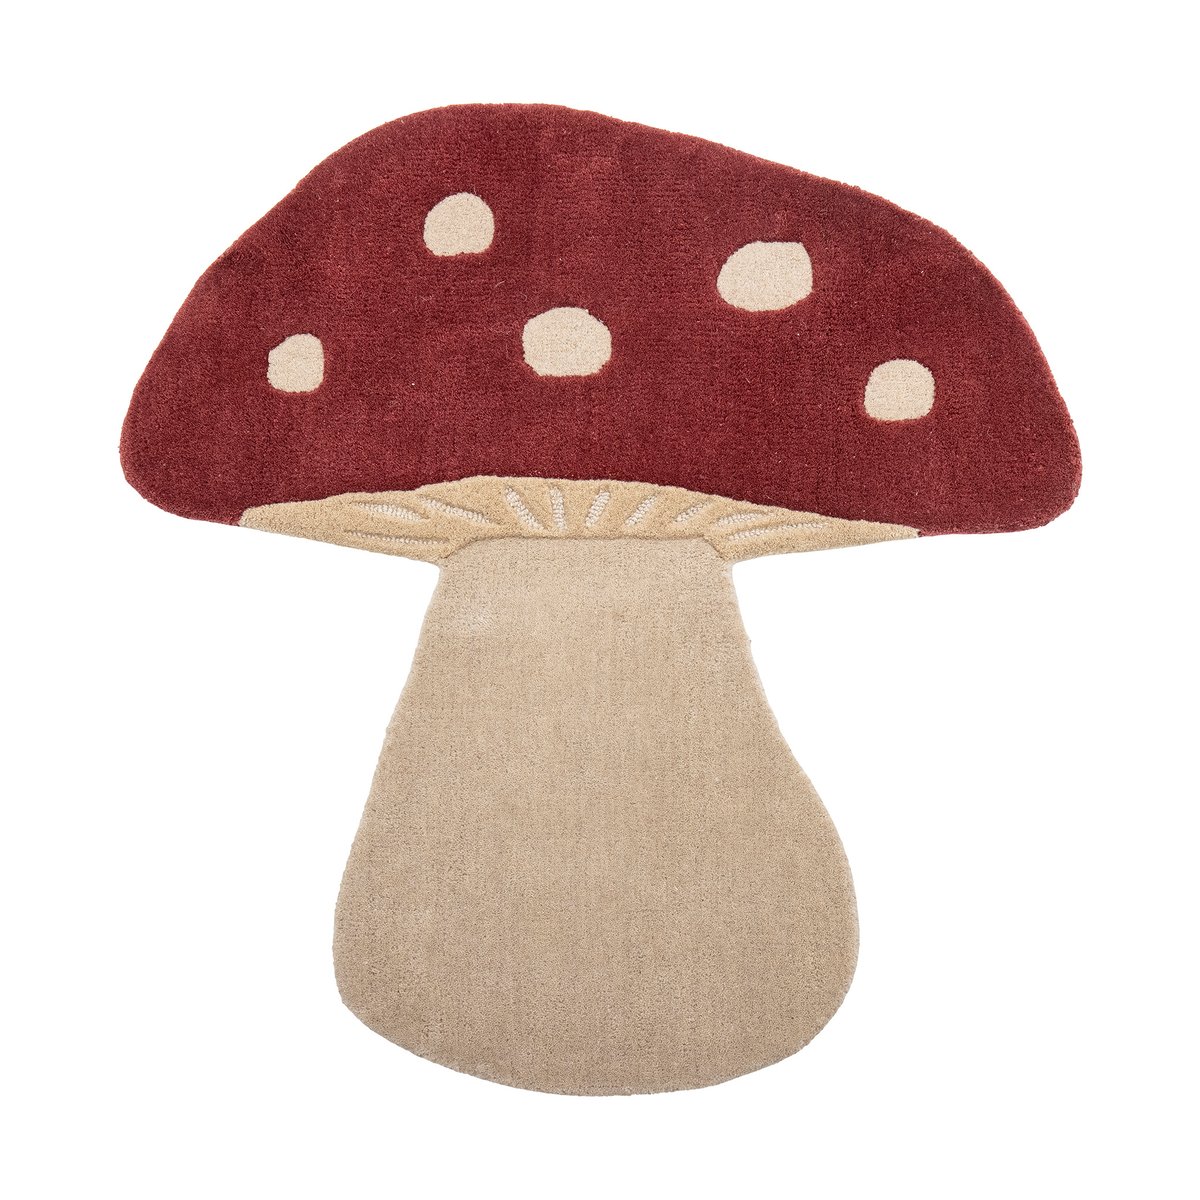 Bilde av Bloomingville Mushroom ullteppe 85 x 90 cm Rød-hvit